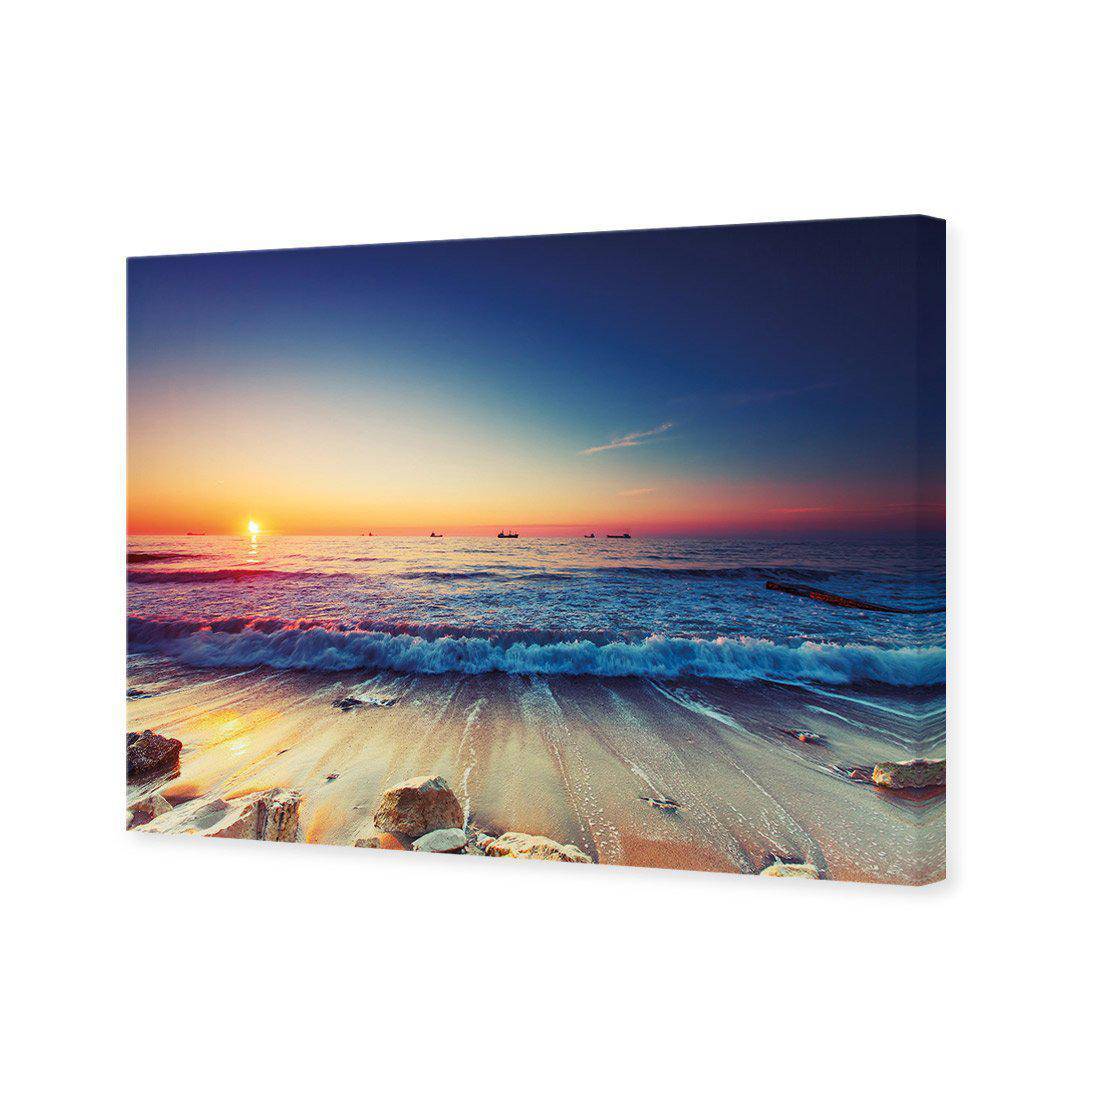 High Tide Sunset Canvas Art-Canvas-Wall Art Designs-45x30cm-Canvas - No Frame-Wall Art Designs